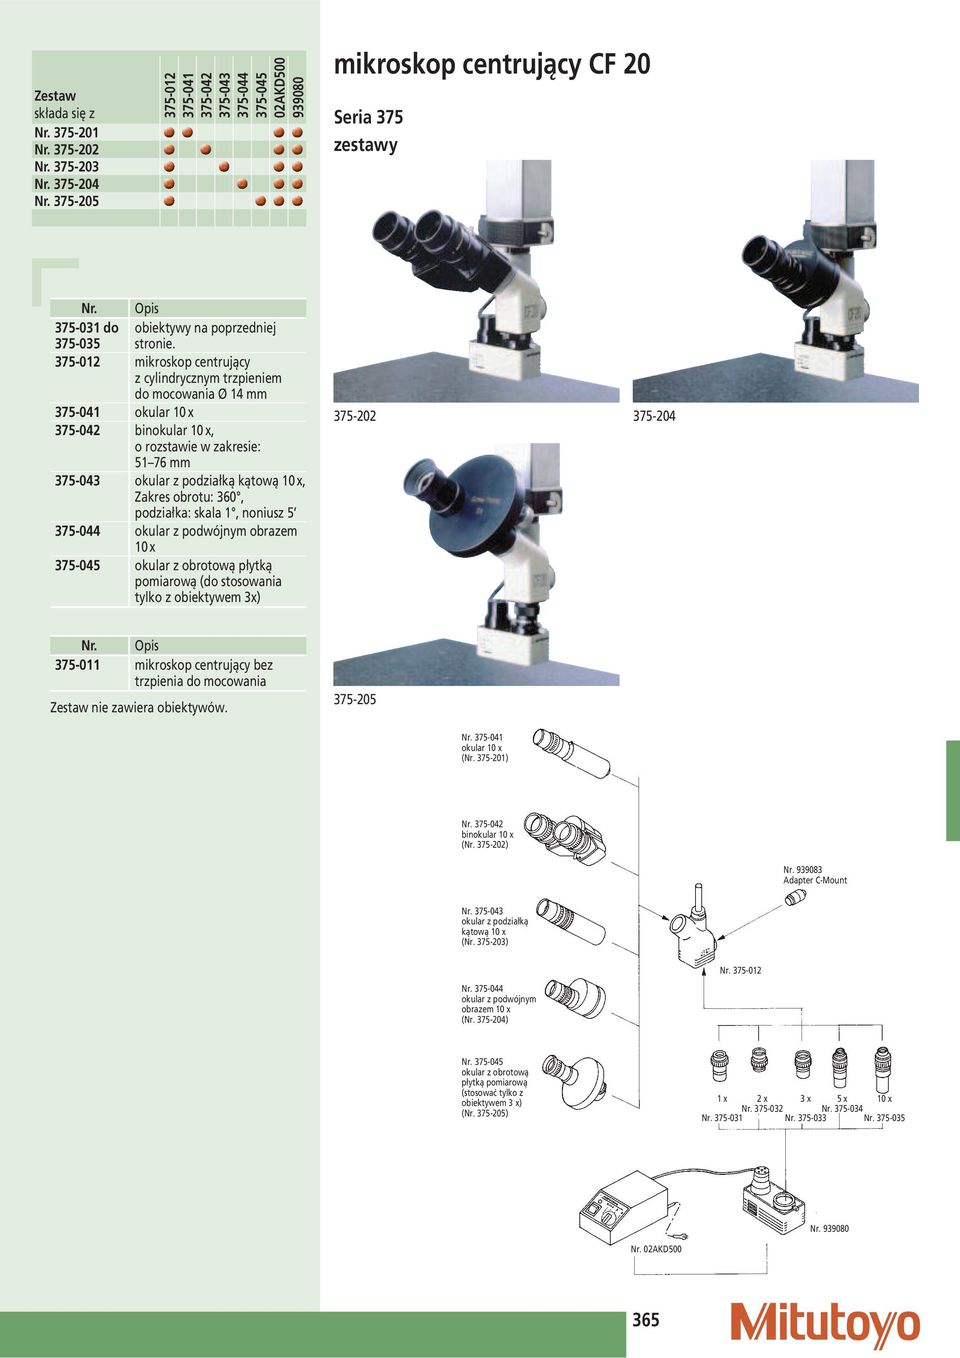 375-012 mikroskop centrujący z cylindrycznym trzpieniem do mocowania Ø 14 375-041 okular 10 x 375-042 binokular 10 x, o rozstawie w zakresie: 51 76 375-043 okular z podziałką kątową 10 x, Zakres